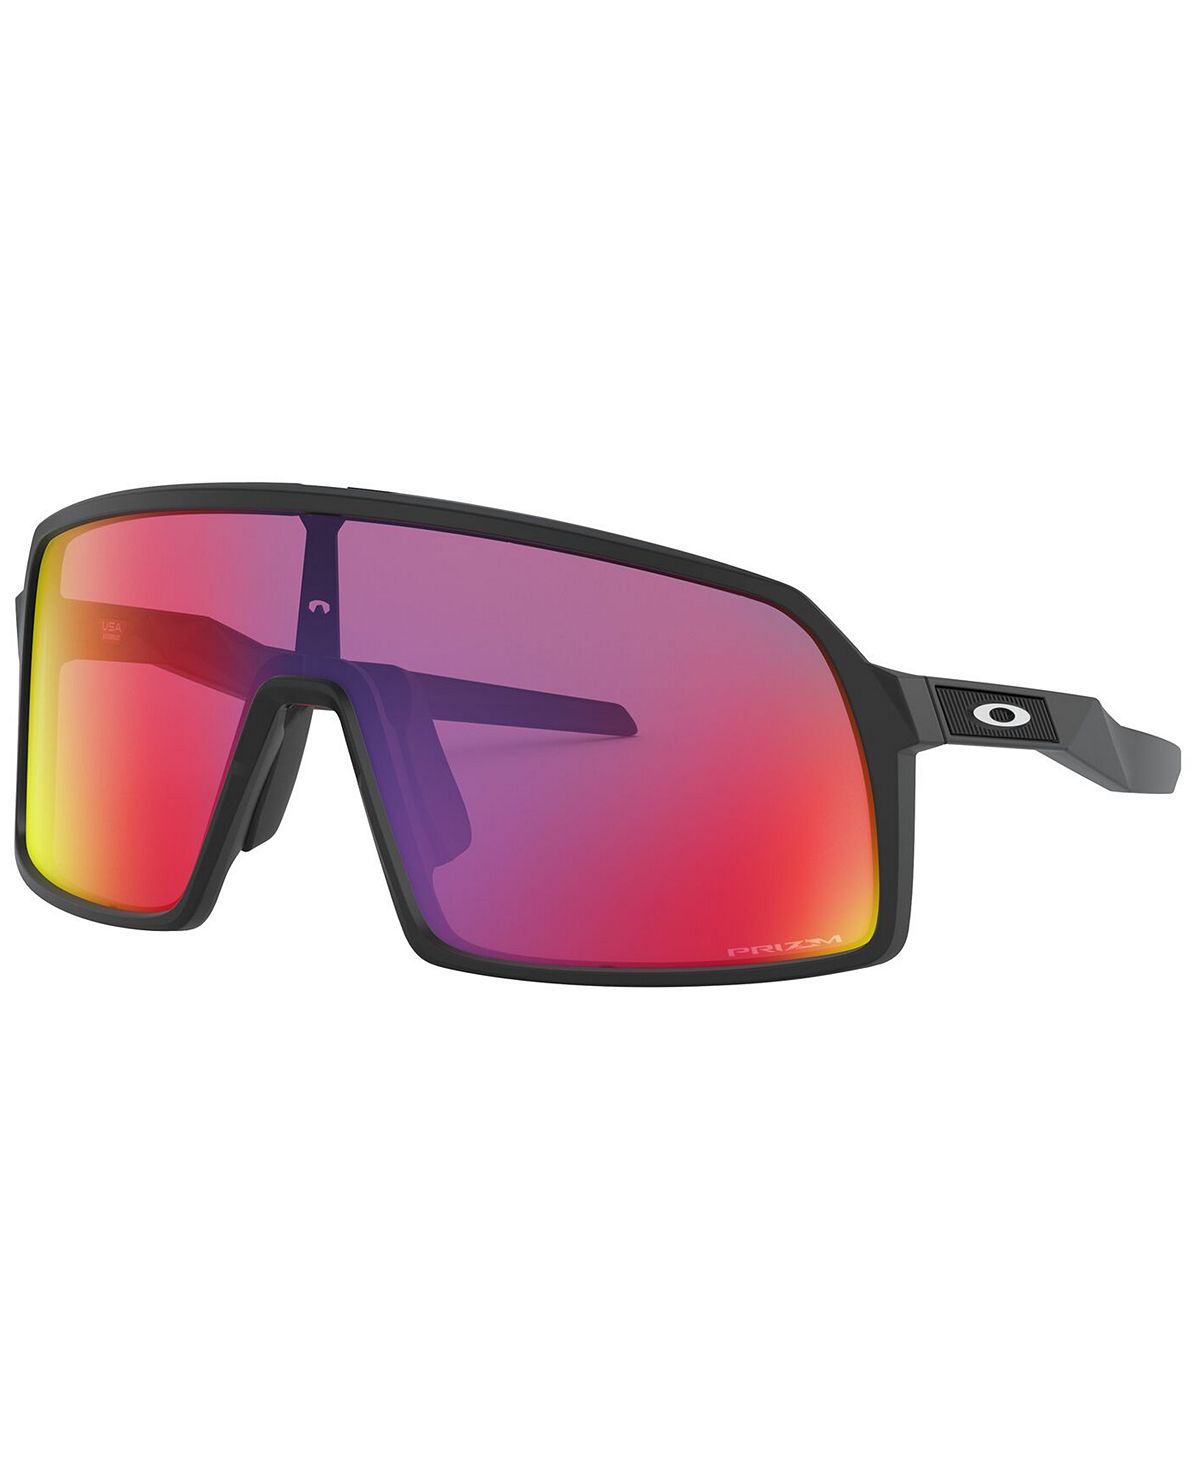 Мужские солнцезащитные очки Sutro, OO9462 28 Oakley